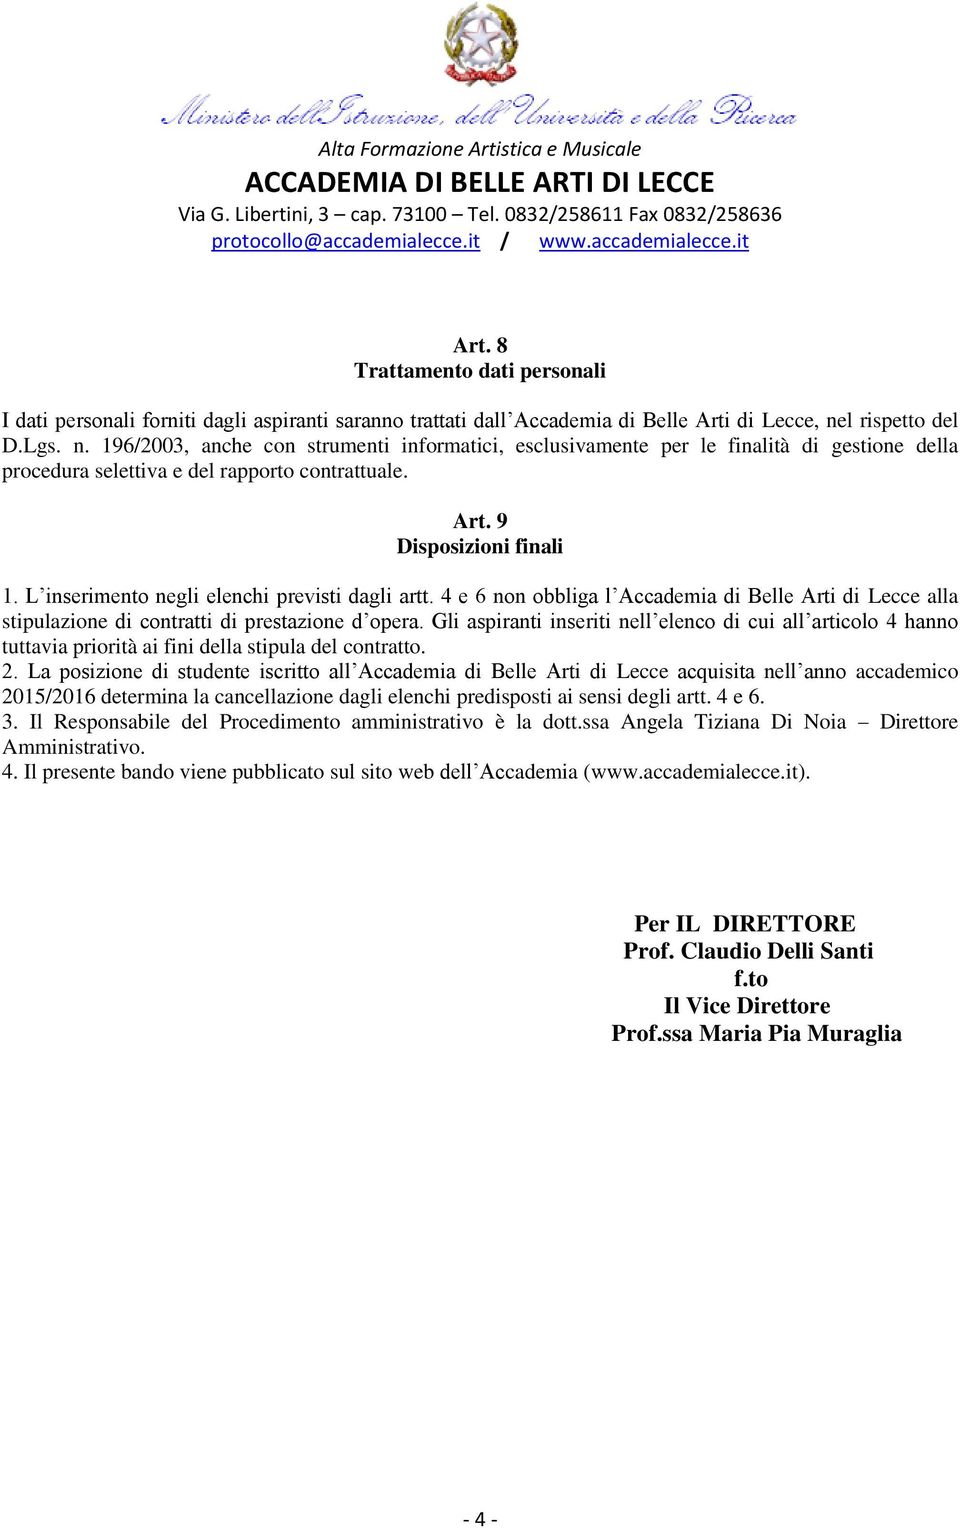 L inserimento negli elenchi previsti dagli artt. 4 e 6 non obbliga l Accademia di Belle Arti di Lecce alla stipulazione di contratti di prestazione d opera.